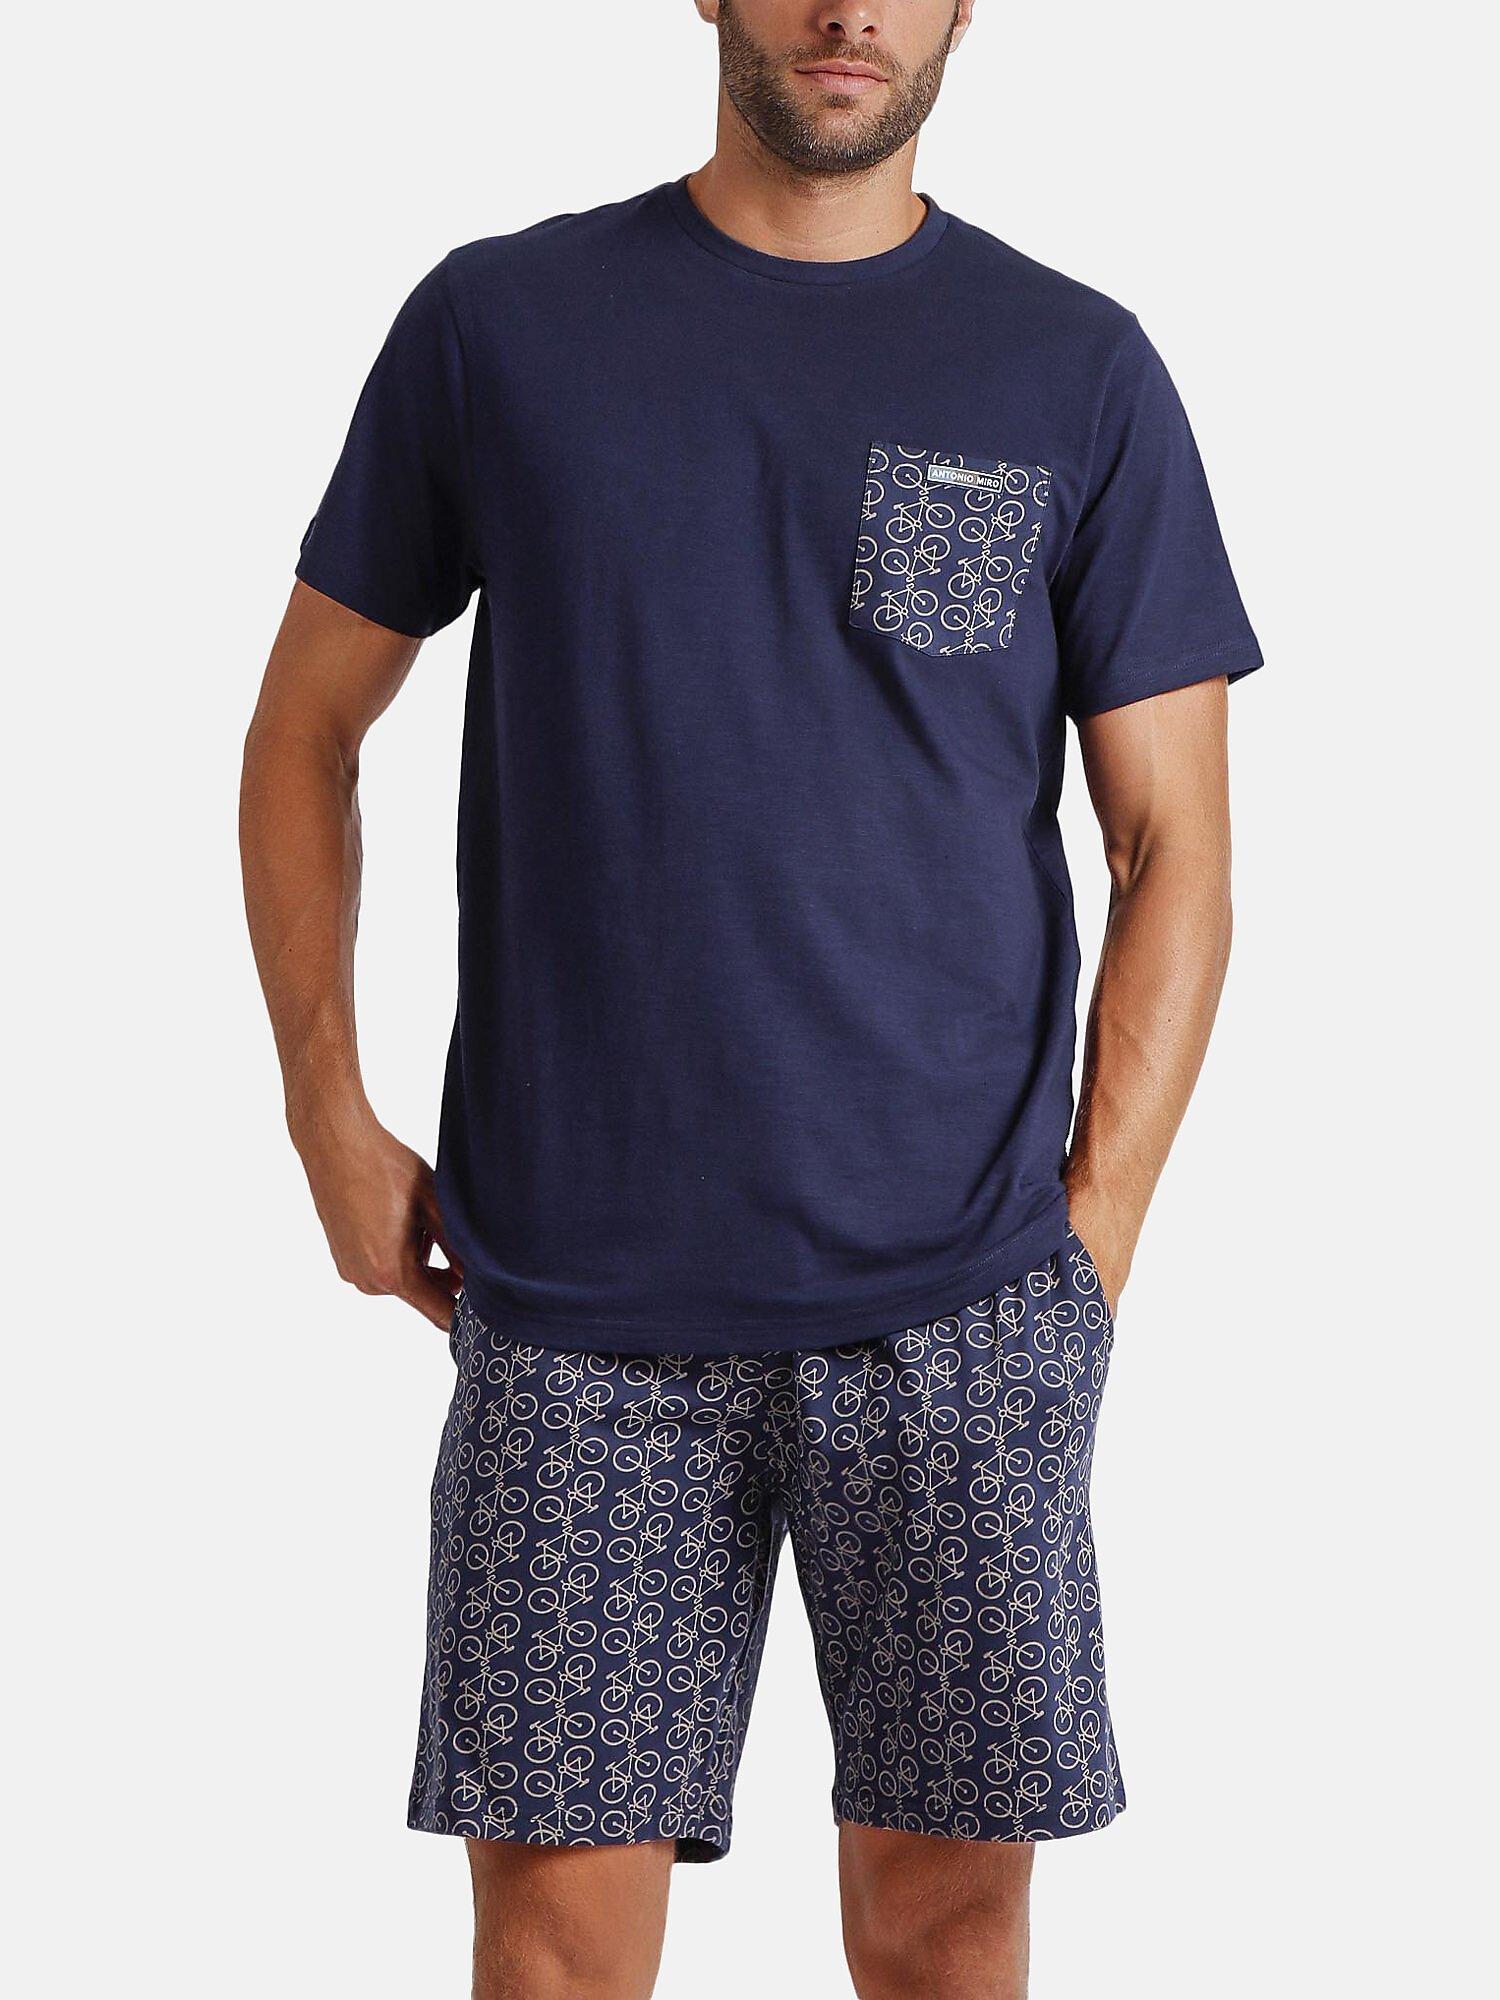 Pyjama Shorts T-shirt Bikely Antonio Miro Herren Blau S von Admas